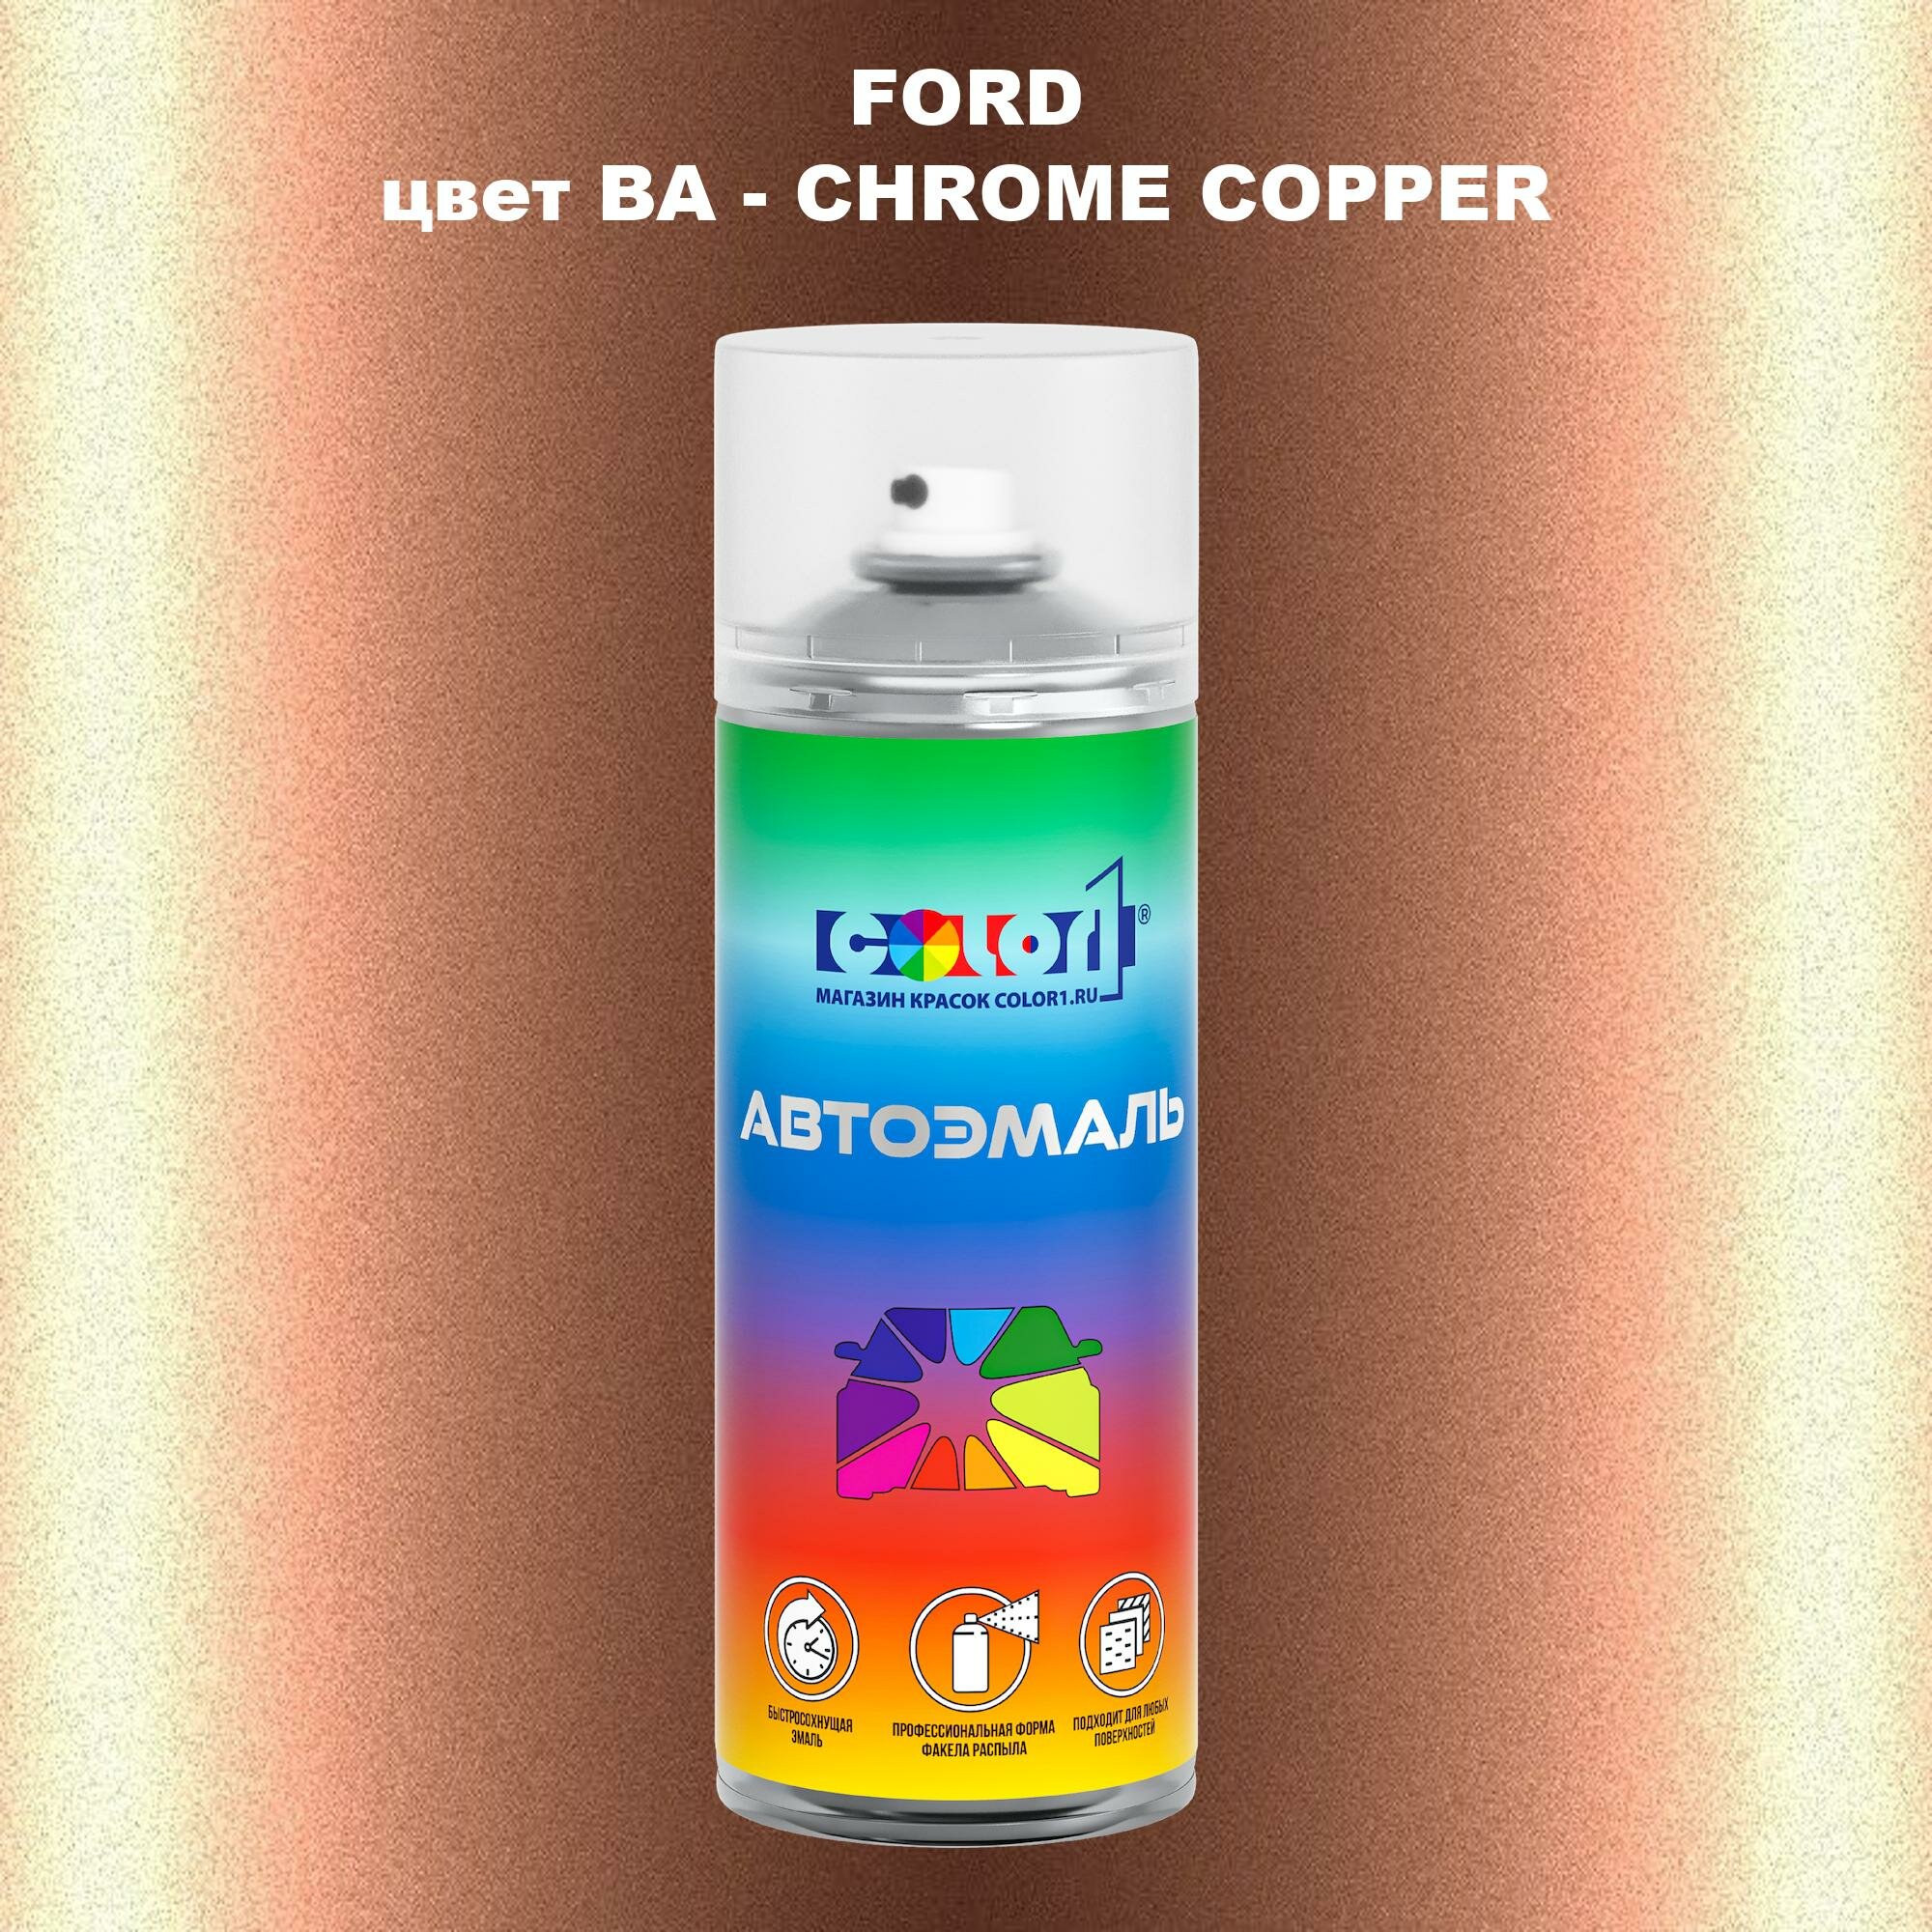 Аэрозольная краска COLOR1 для FORD, цвет BA - CHROME COPPER